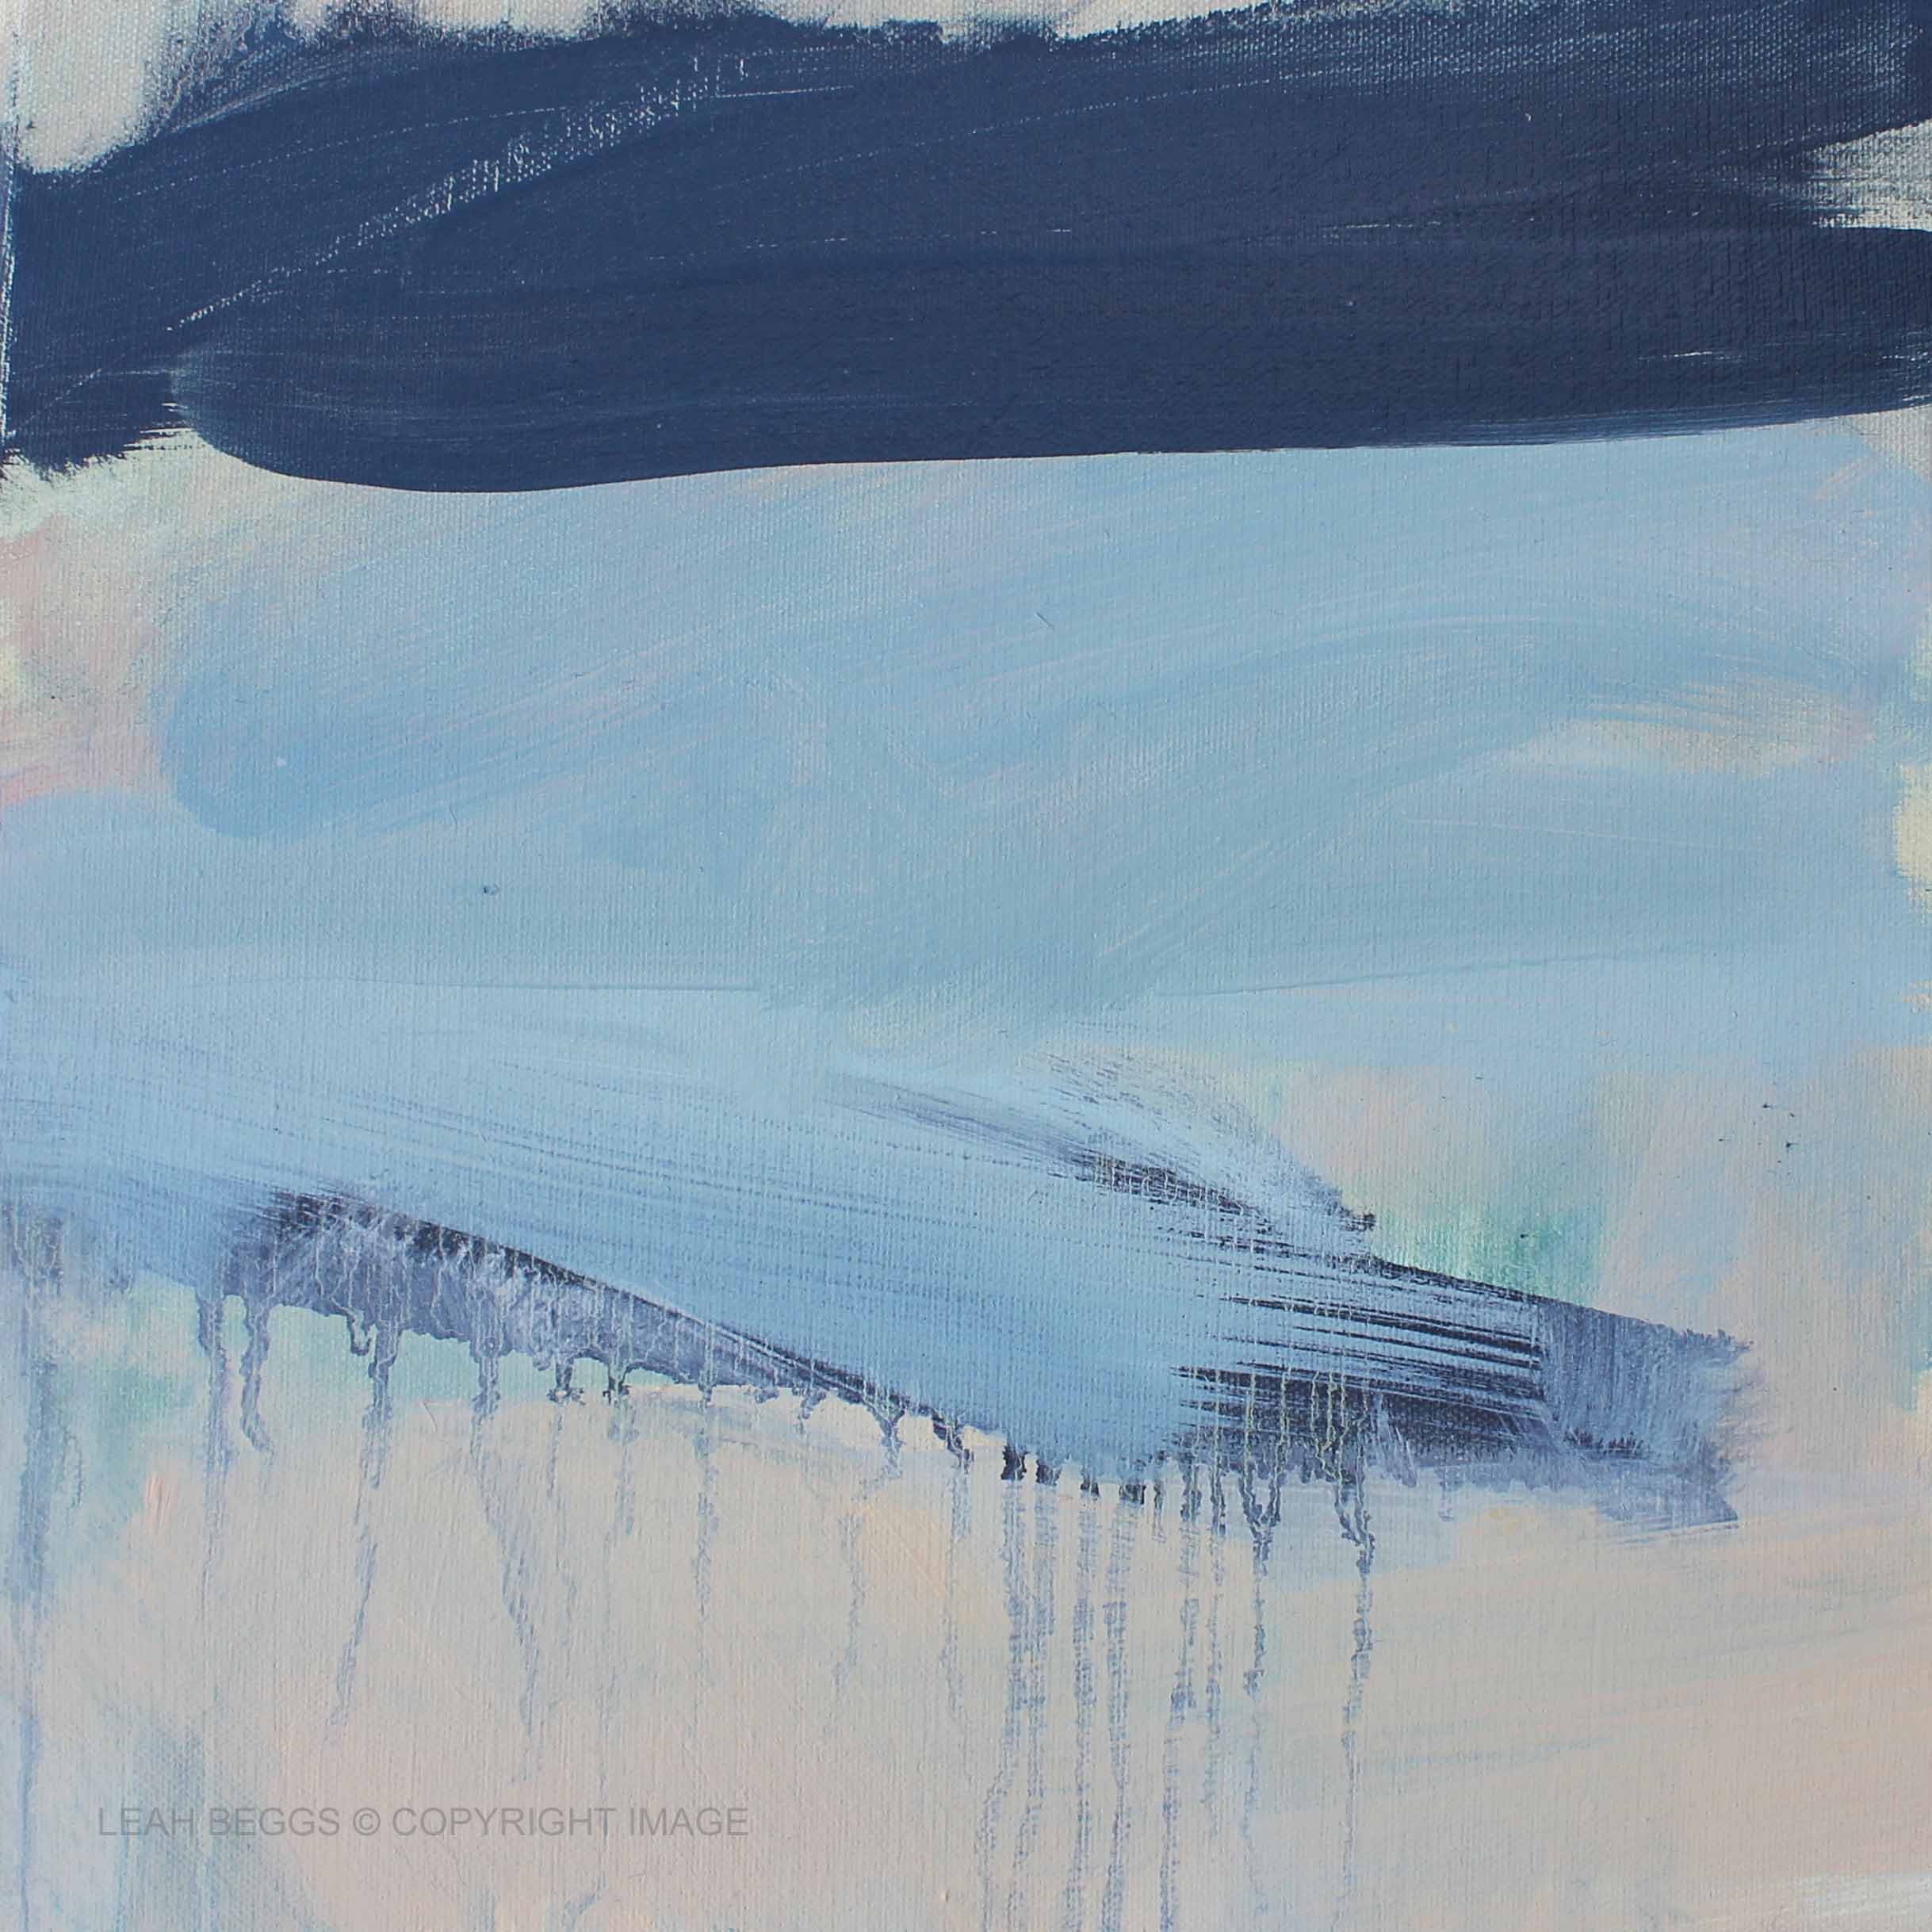 Leah-Beggs-2016-Oil-on-Canvas-30-x-30cm-JANUARY-BLUES-1.jpg